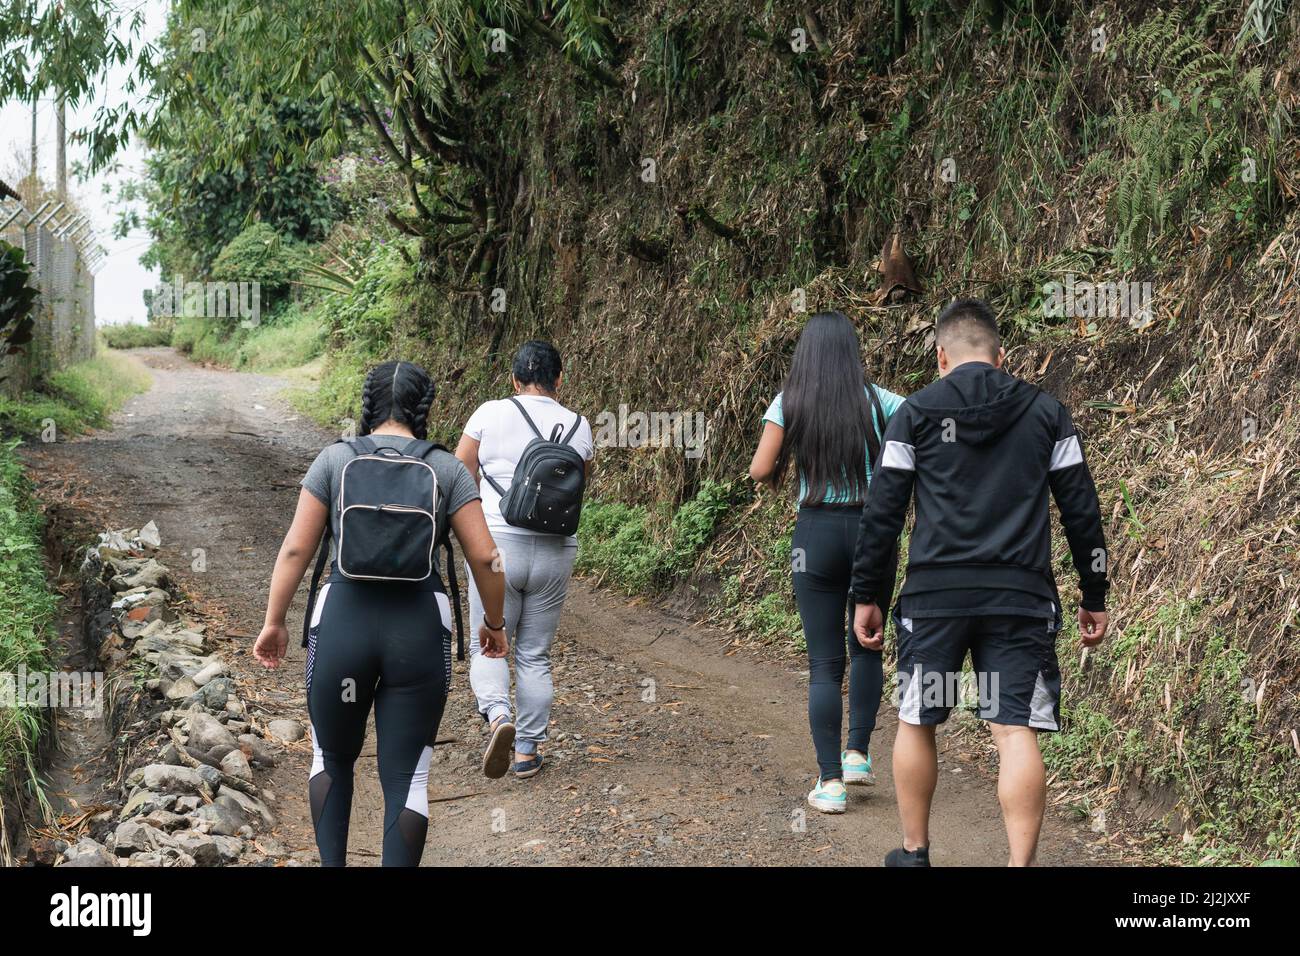 Madre y sus hijos latinos van de excursión en familia a través de la región de eje cafetero en Colombia. La gente va a caminar por la mañana para ejercitar su Foto de stock